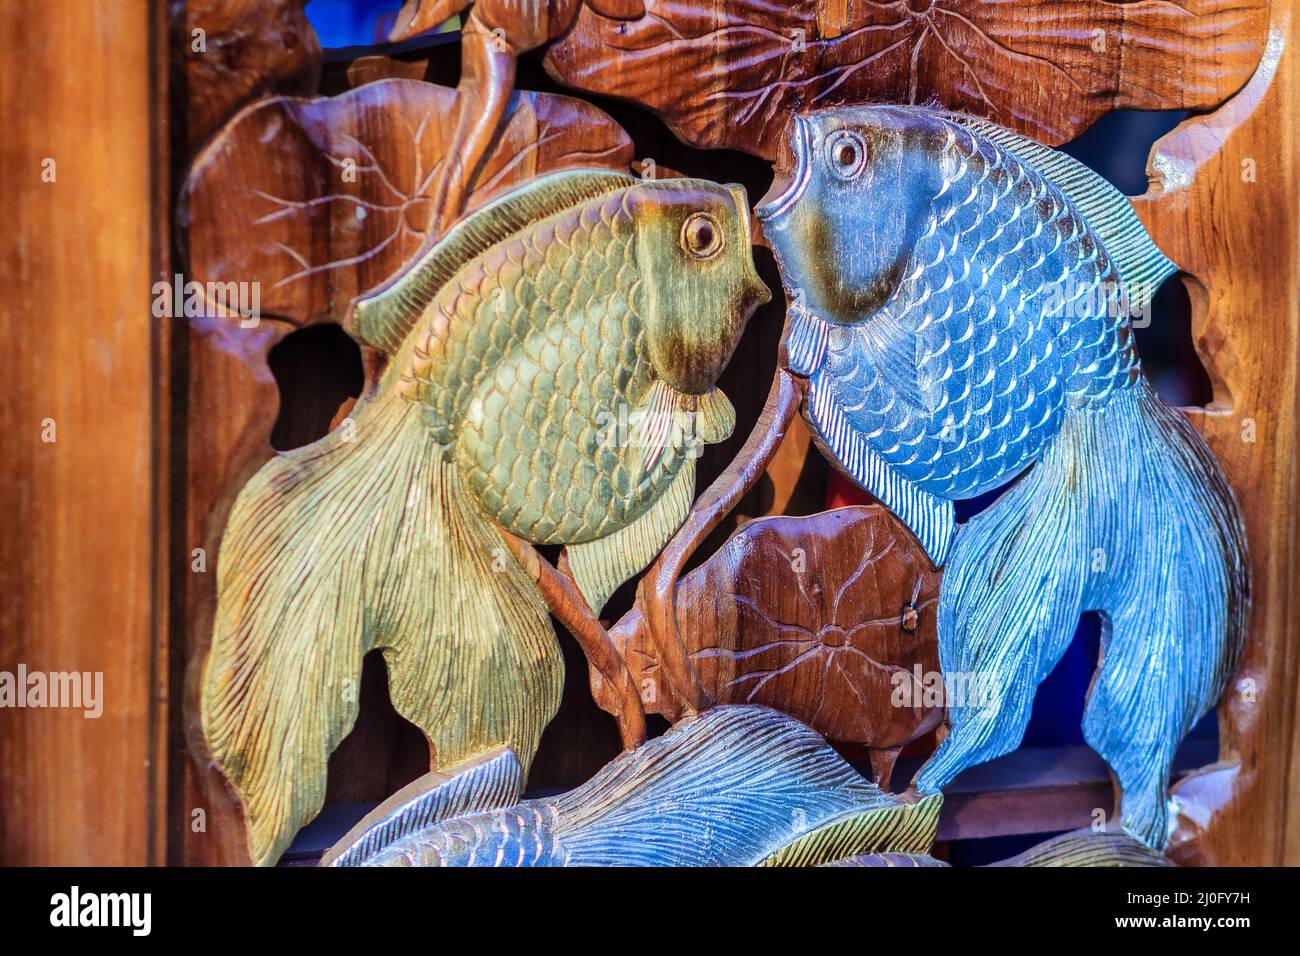 Schöne Holzschnitzerei von goldenen Silberfischen. Antike Kunst Handgefertigte Möbel, die goldene Silberfische im Holz schnitzeln. Gold Stockfoto